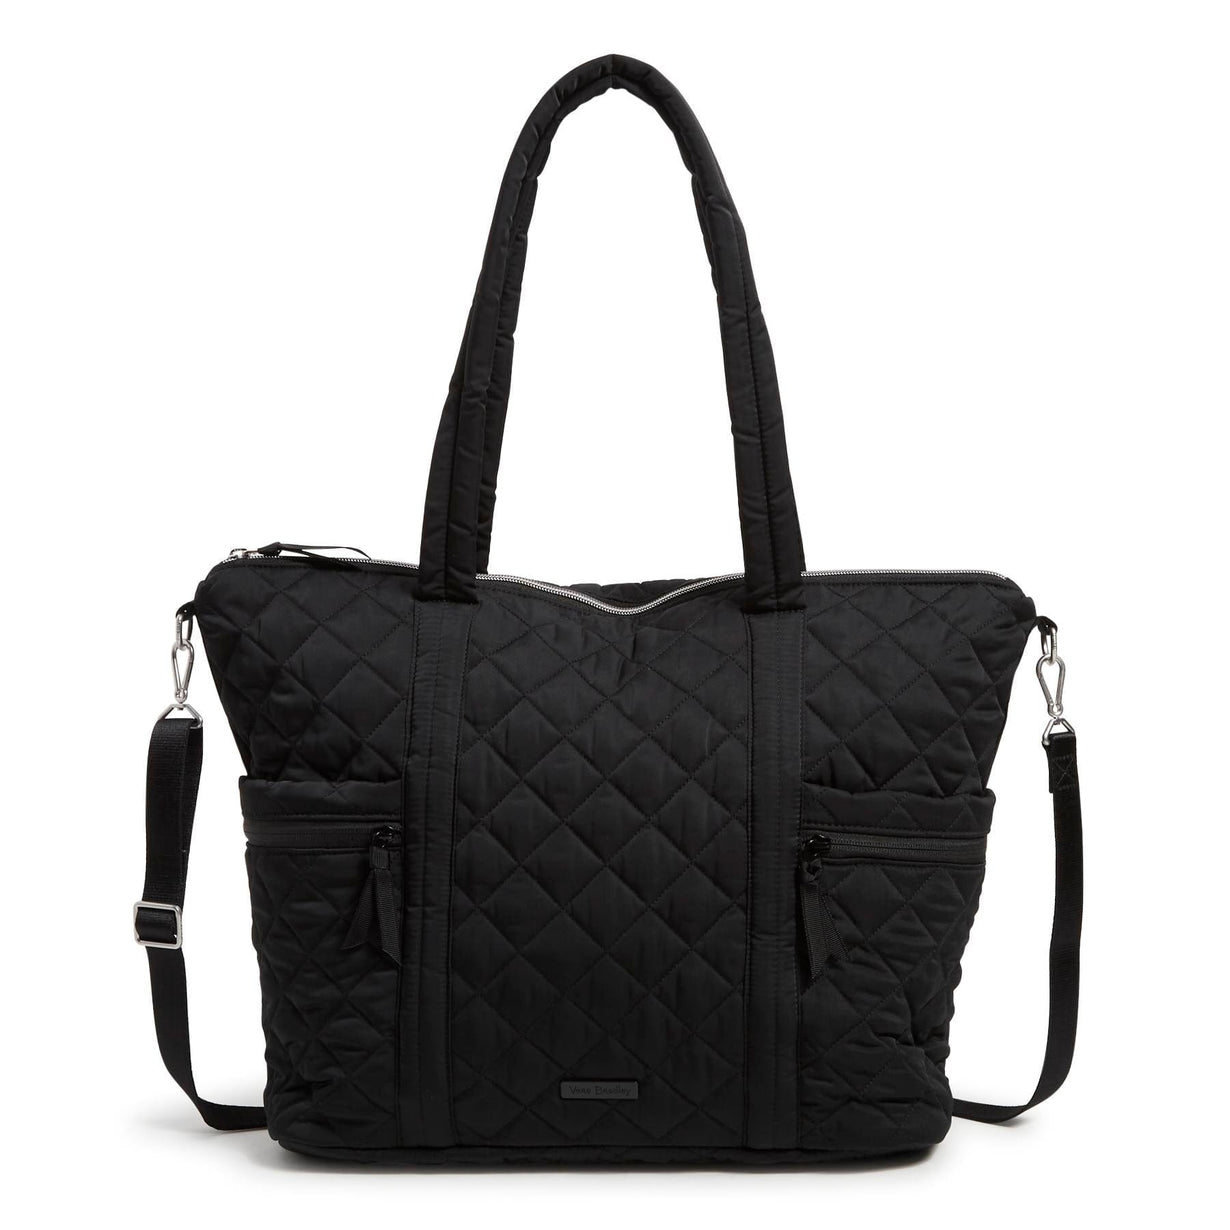 Vera Bradley Outlet |Black Large Multi-Strap Tote Bag – Vera Bradley ...